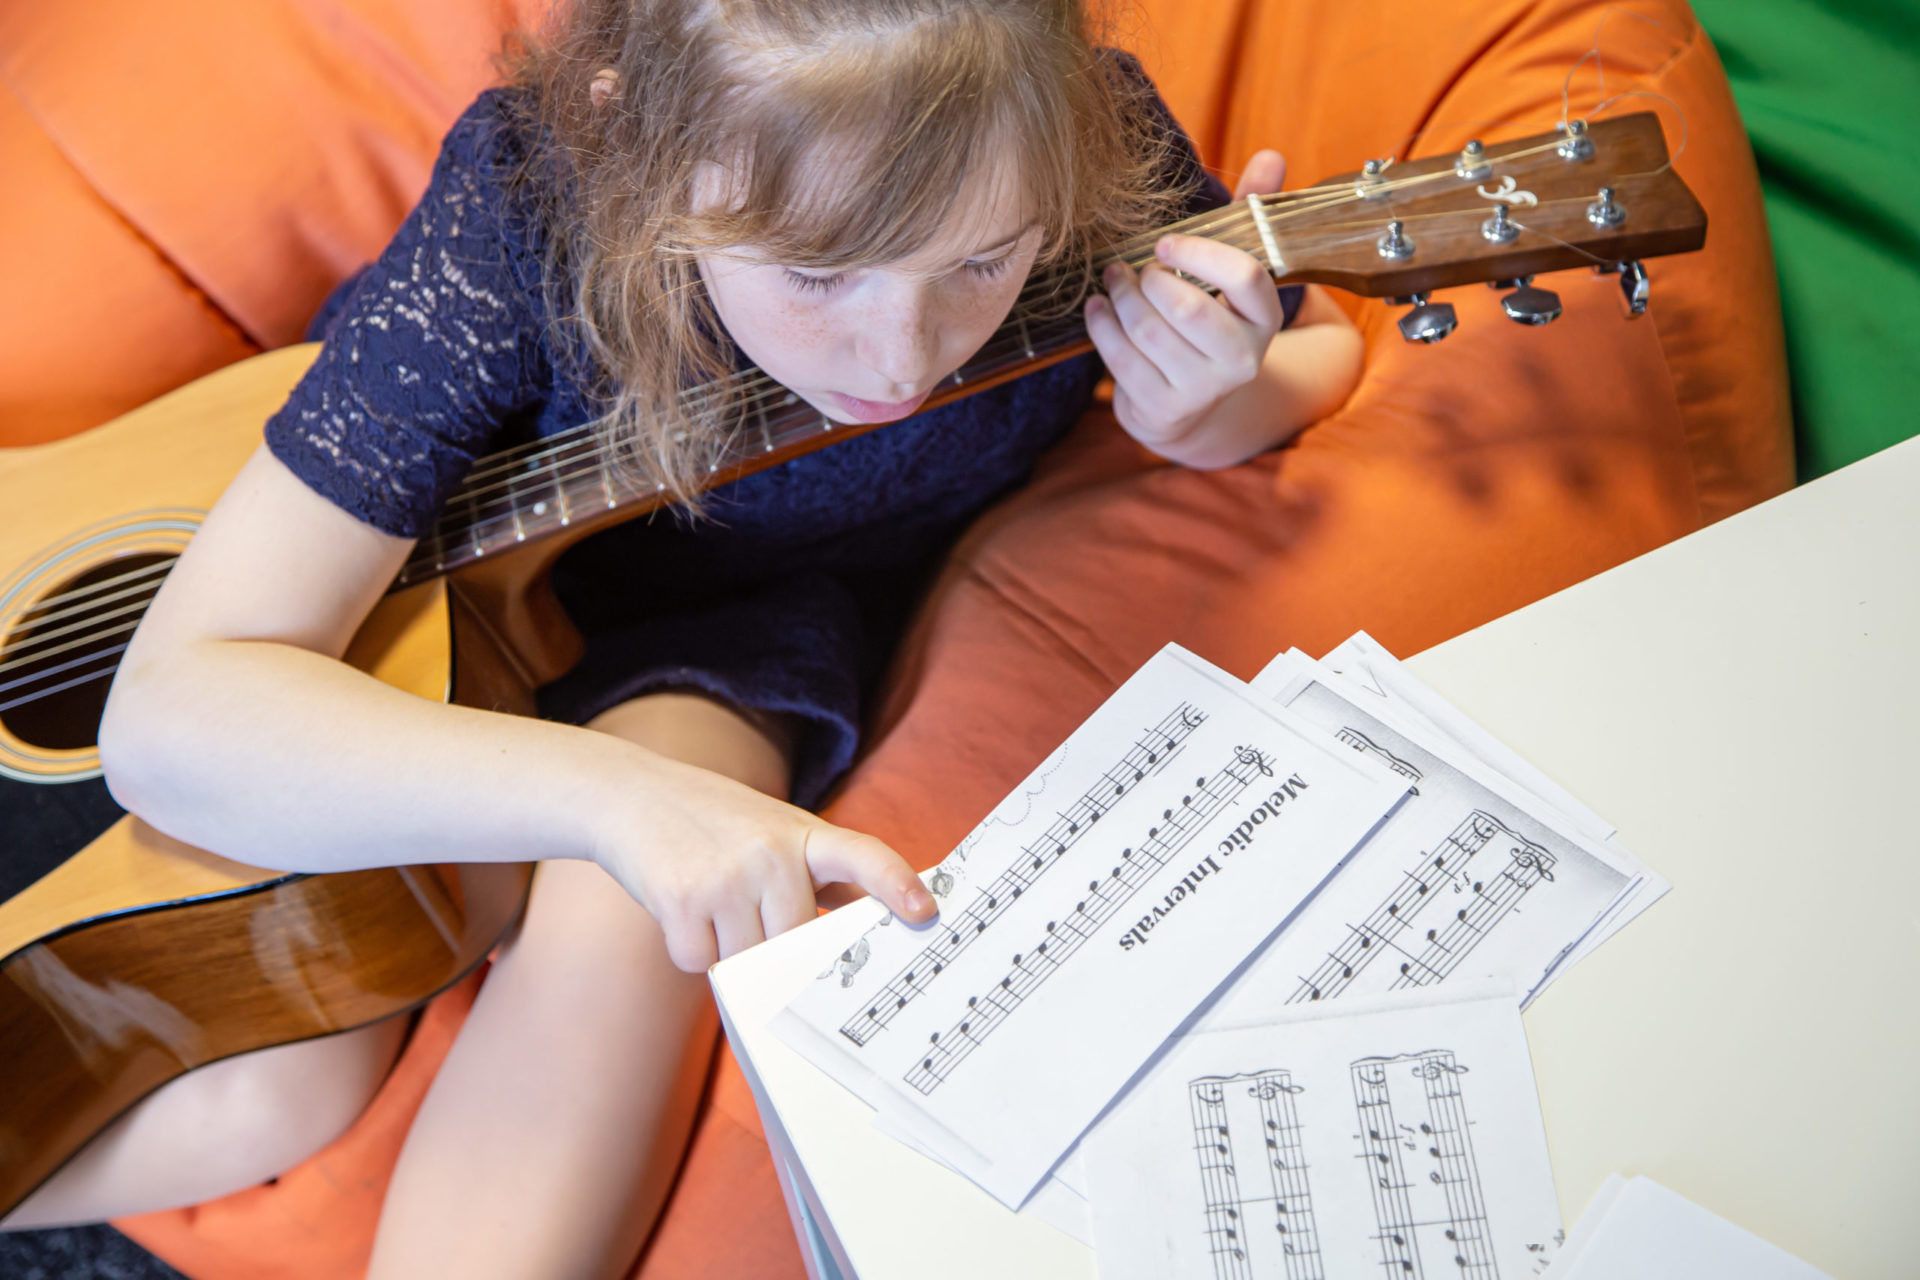 Piyano Gitar Kursu,Kurs,Piyano,Gitar,Eğitim Çocuğunuz için En Doğru Müzik Aleti Hangisidir?